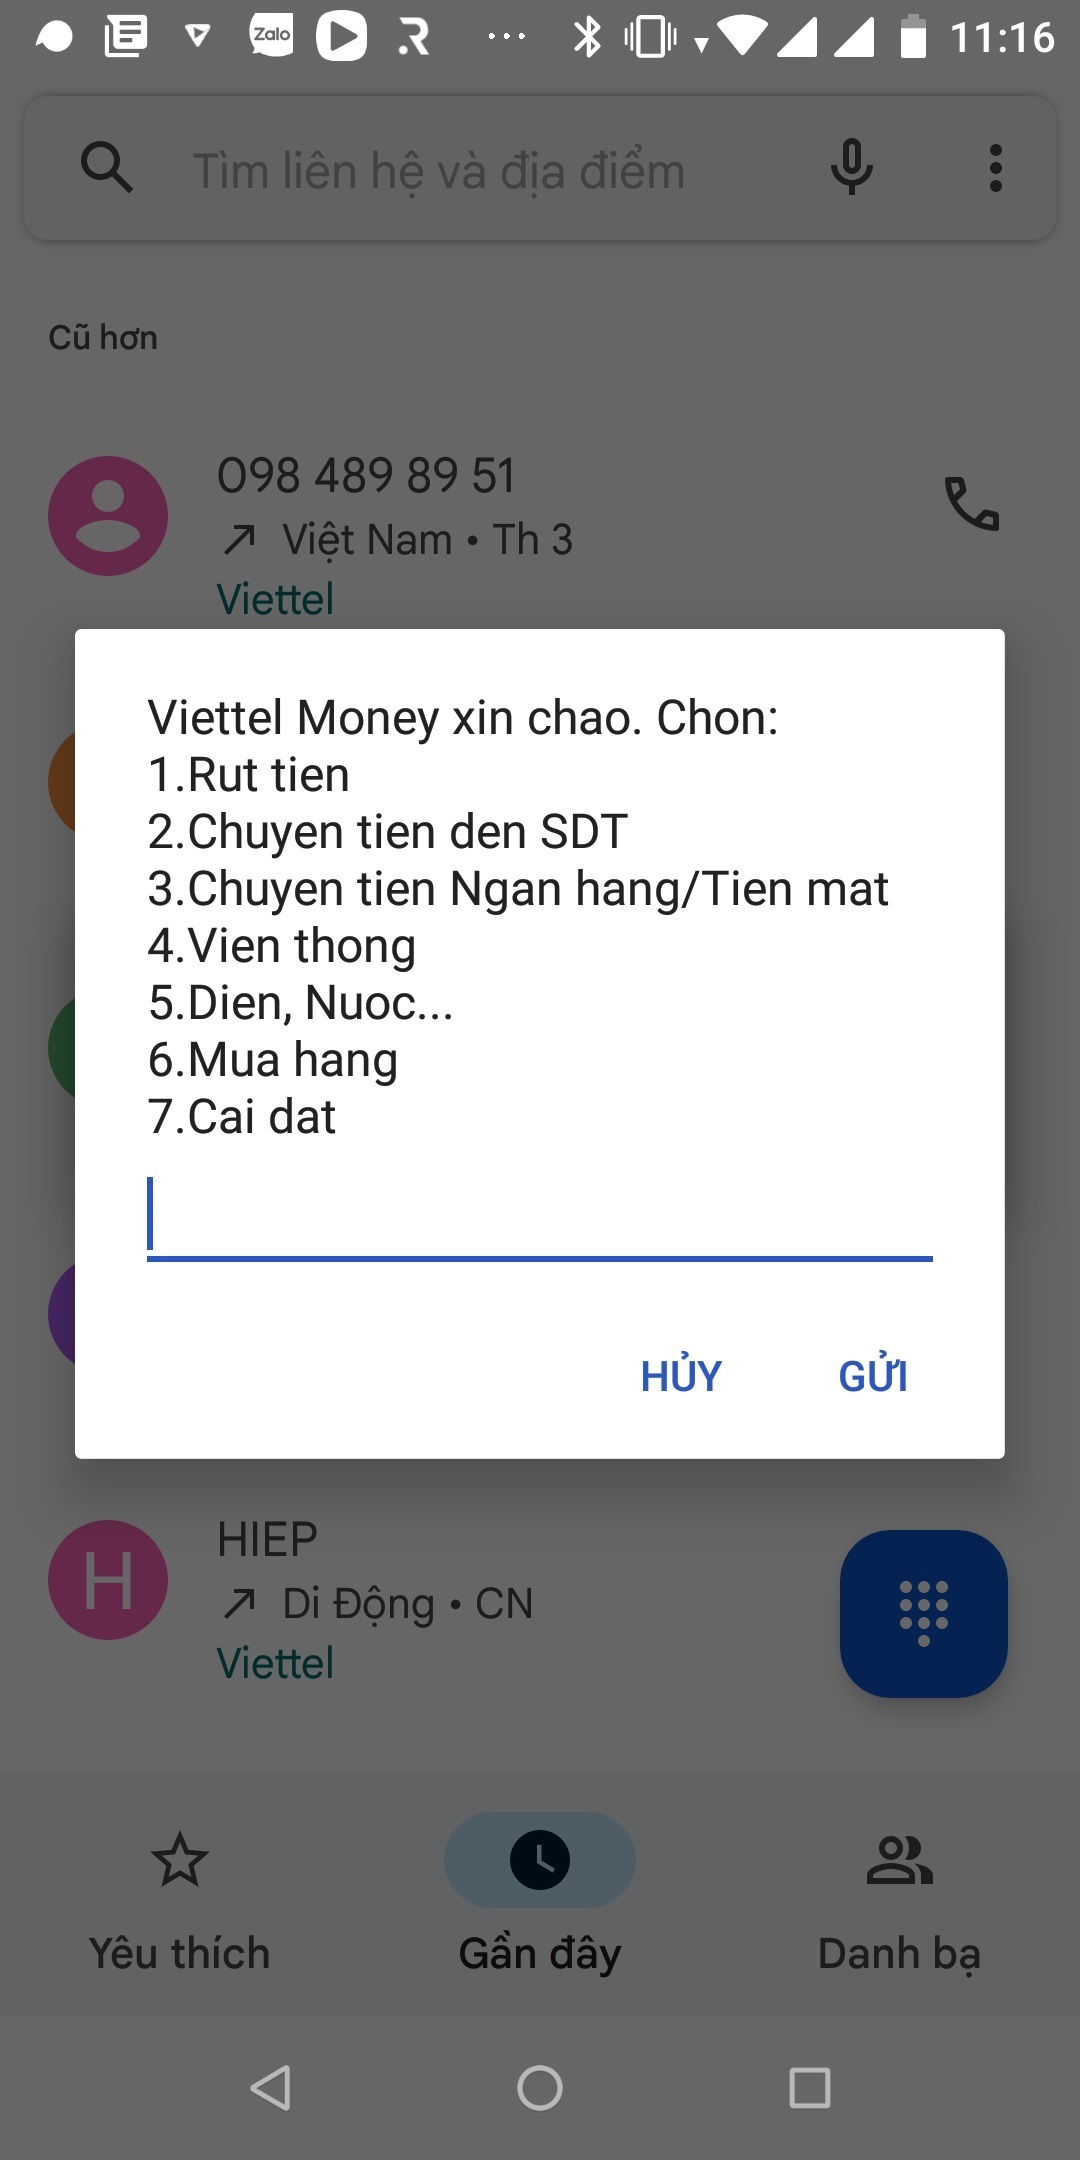 Hướng dẫn sử dụng Mobile Money Viettel khi không có data Internet